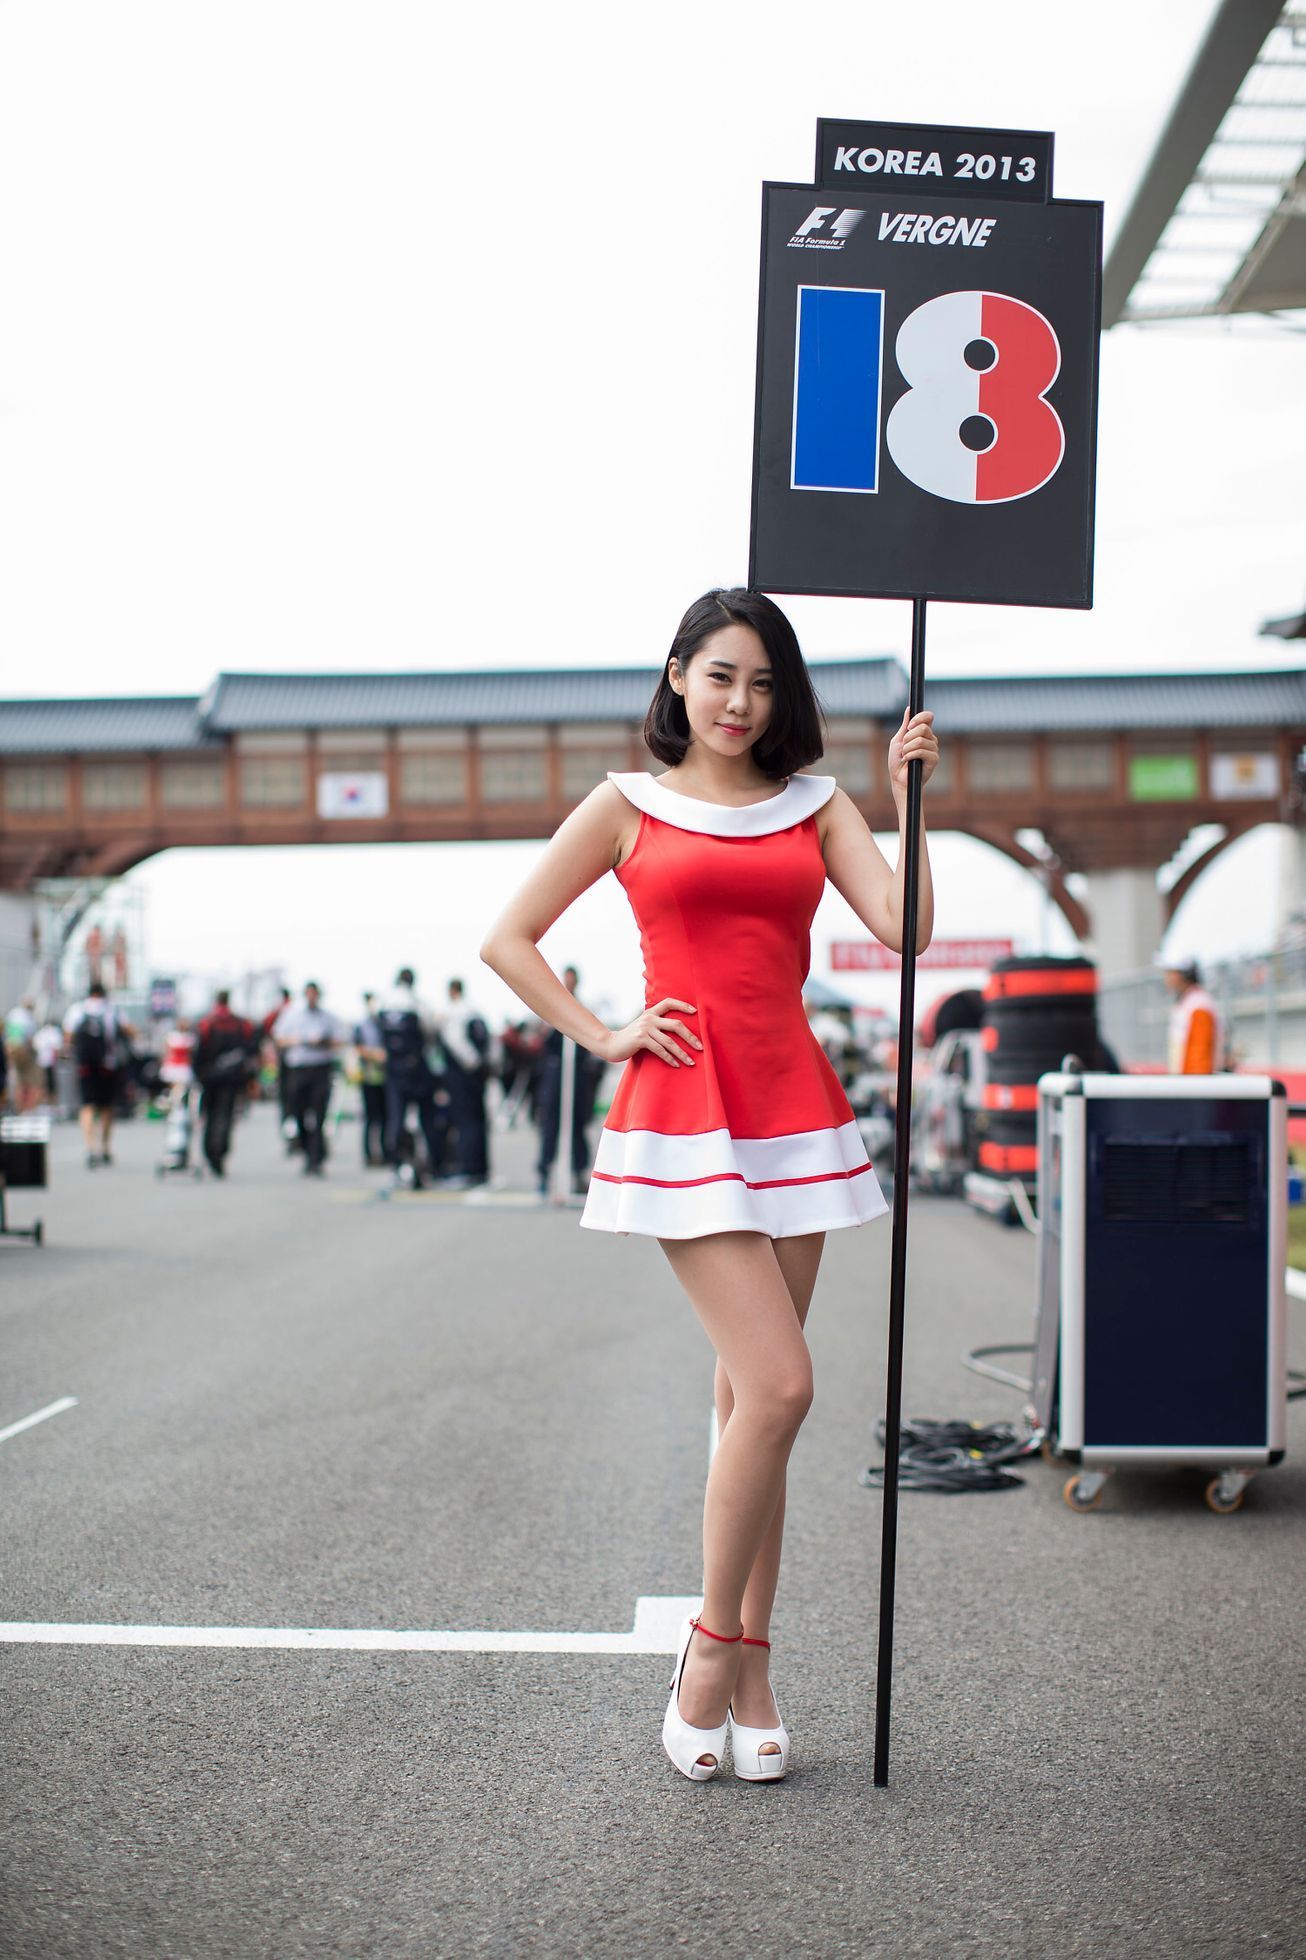 F1, VC Koreje 2013: grid girl, Jean-Eric Vergne, Toro Rosso